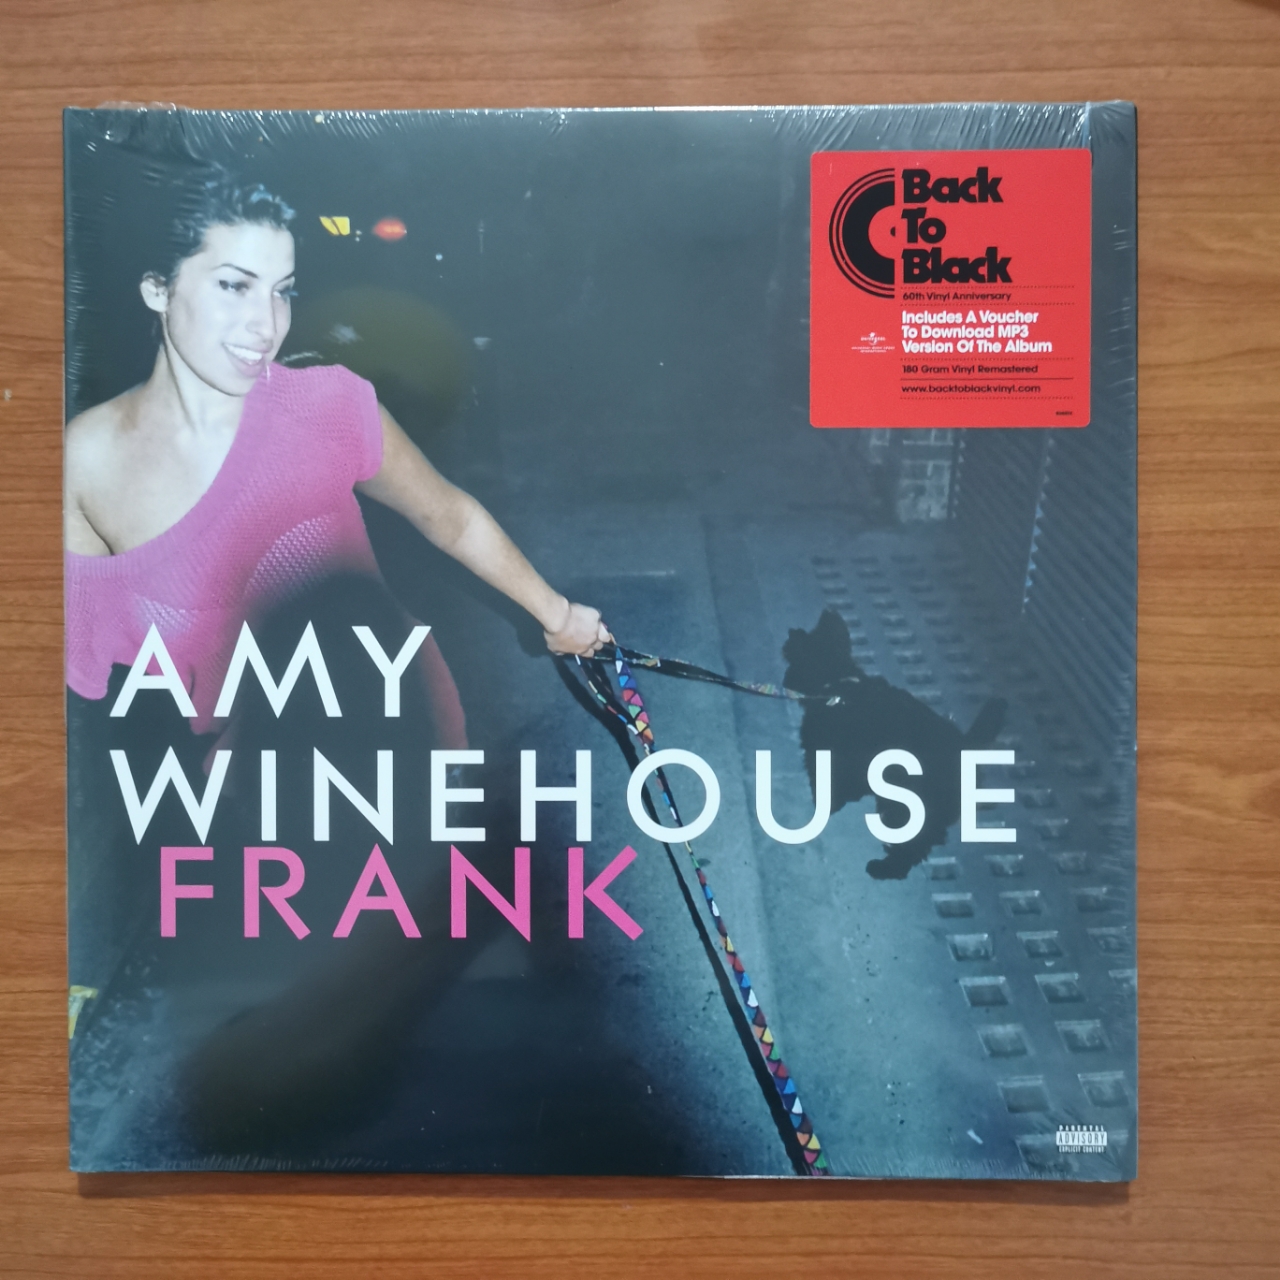 แผ่นเสียง Amy Winehouse อัลบั้ม frank แผ่นเสียงใหม่ ซีล